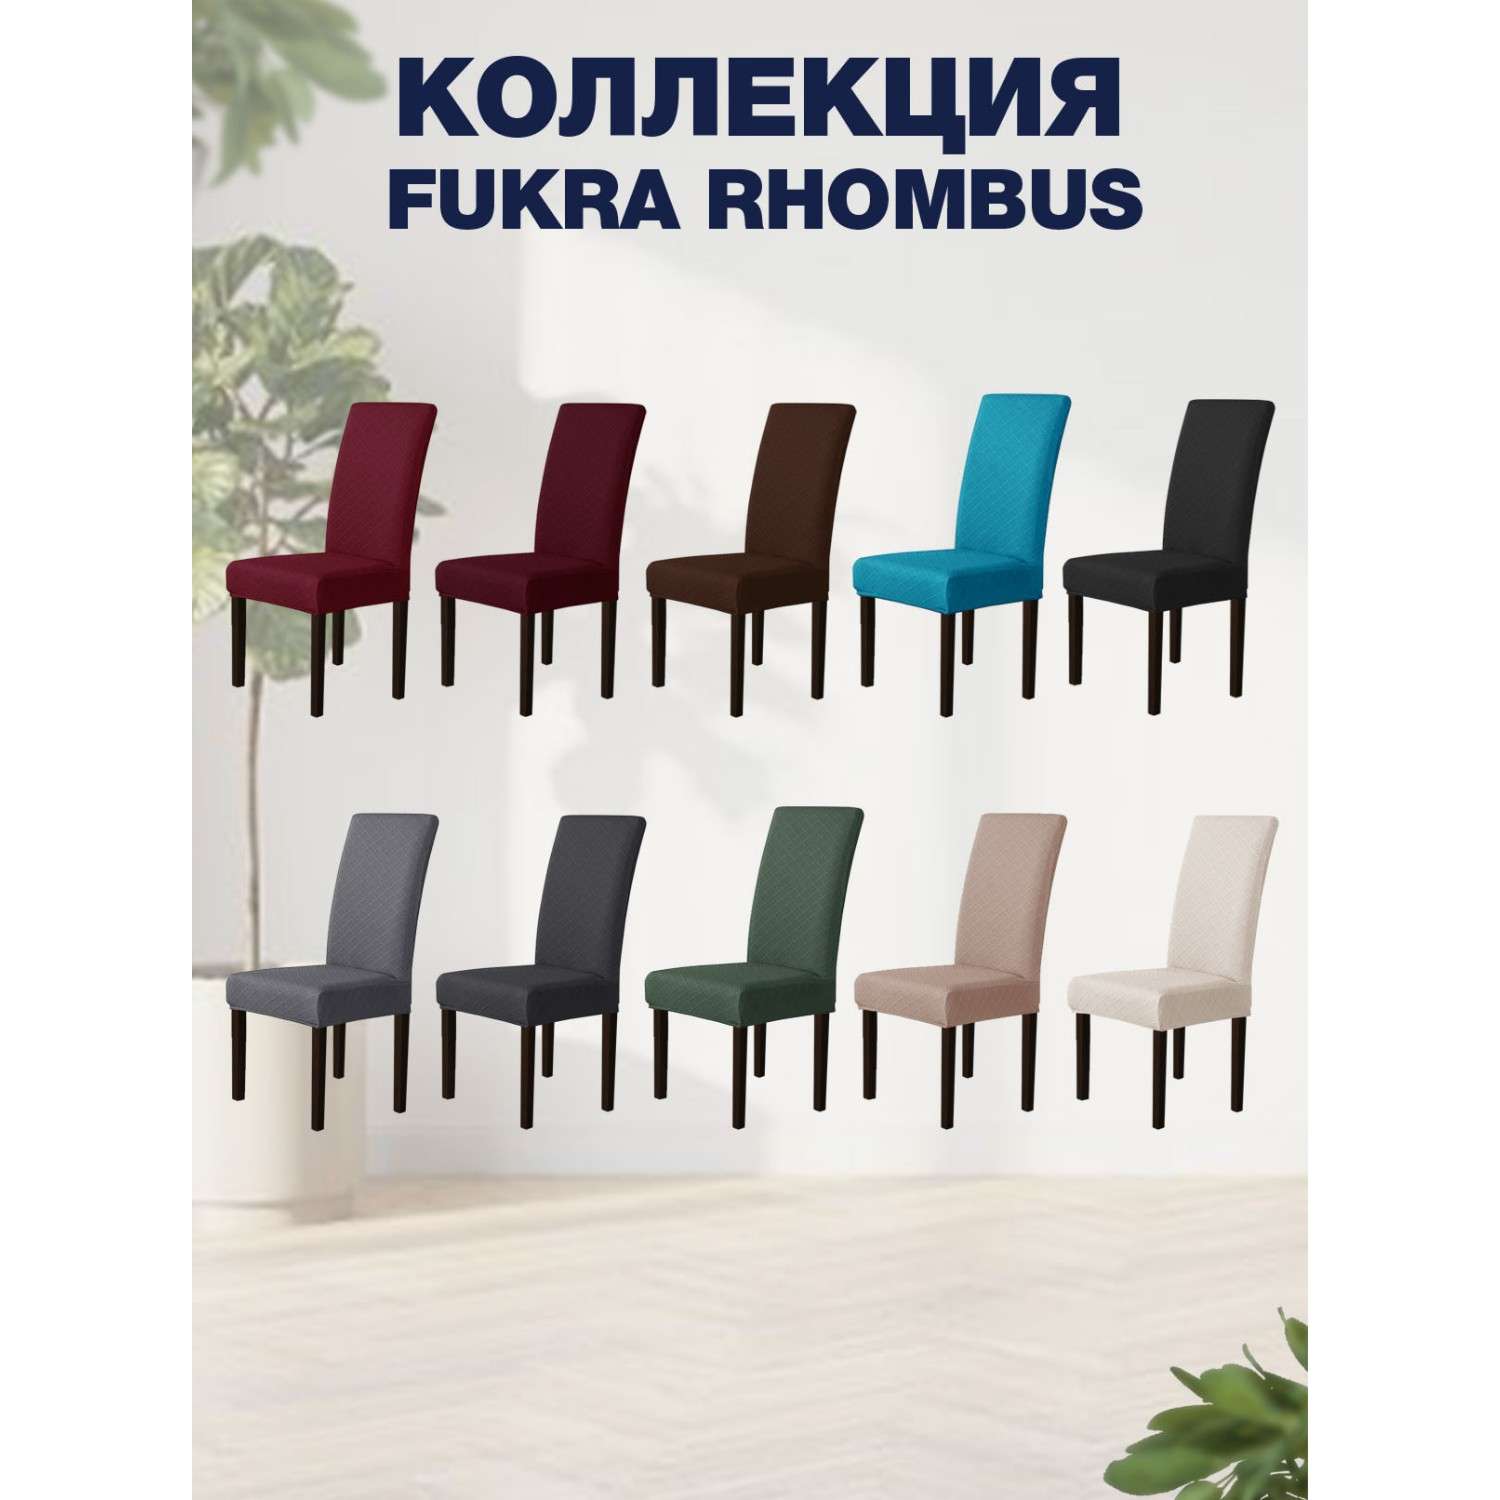 Чехол на стул LuxAlto Коллекция Fukra rhombus Бирюзовый - фото 3